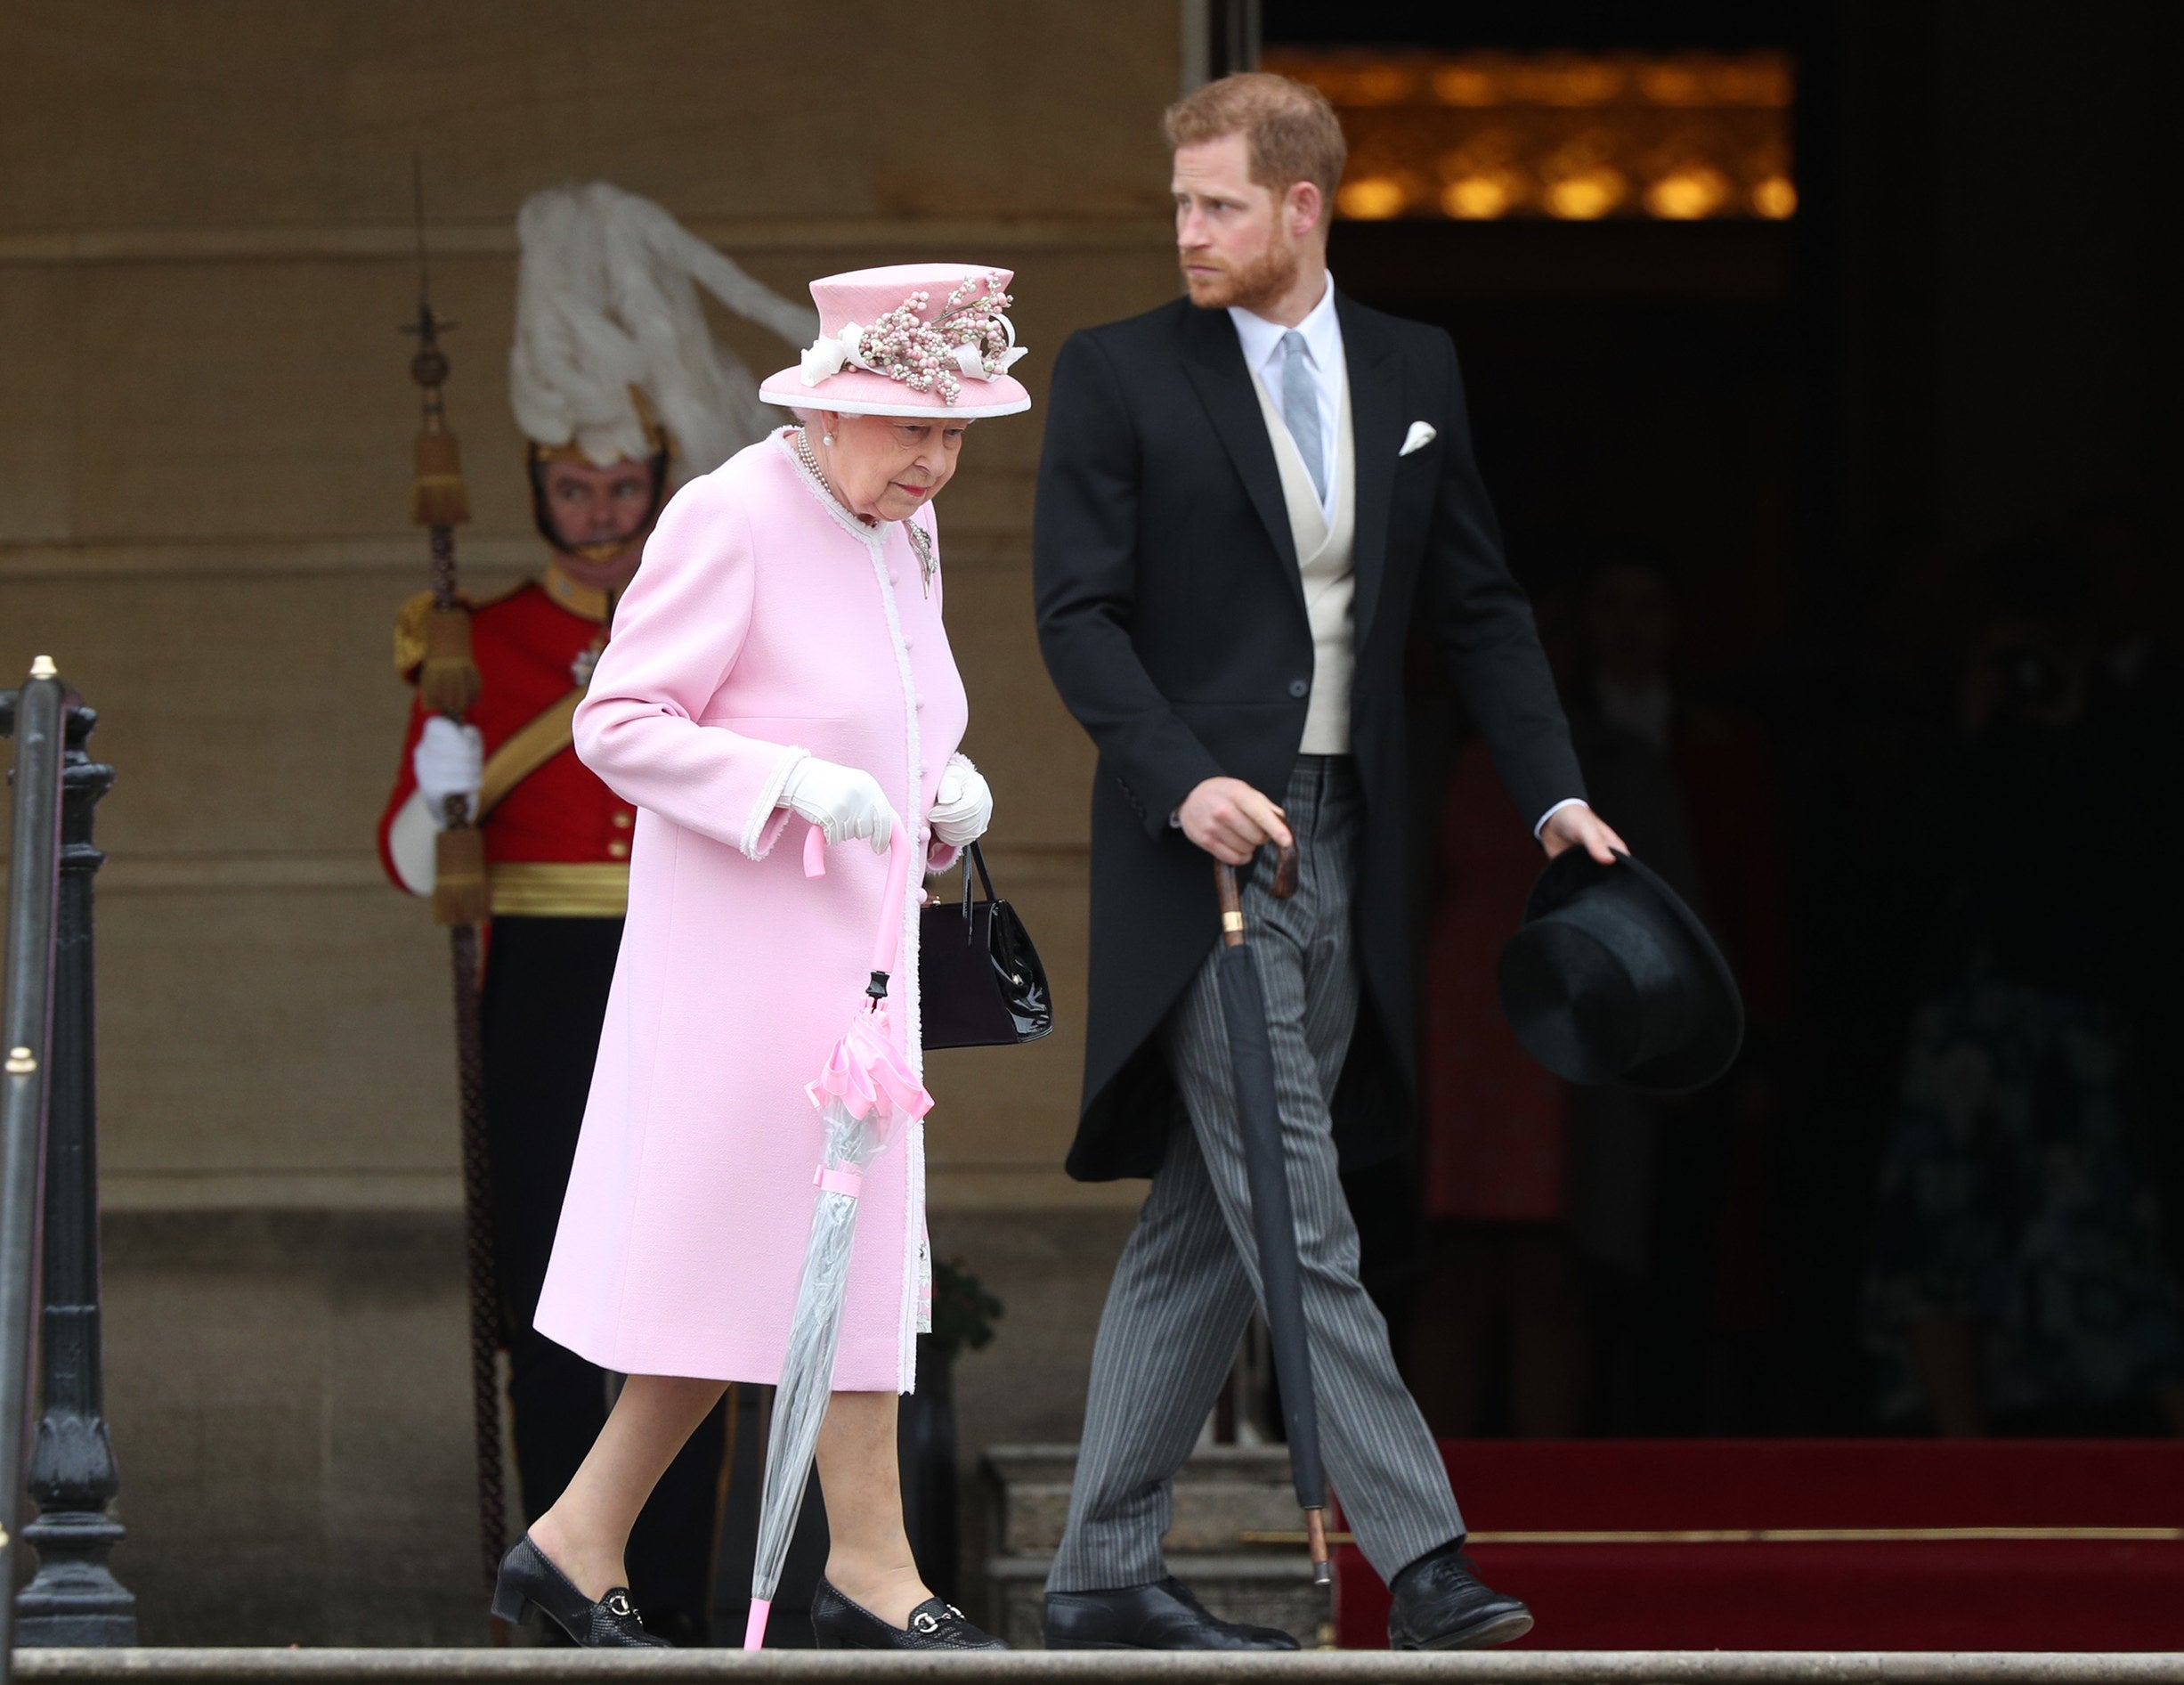 Harry walks alongside the queen